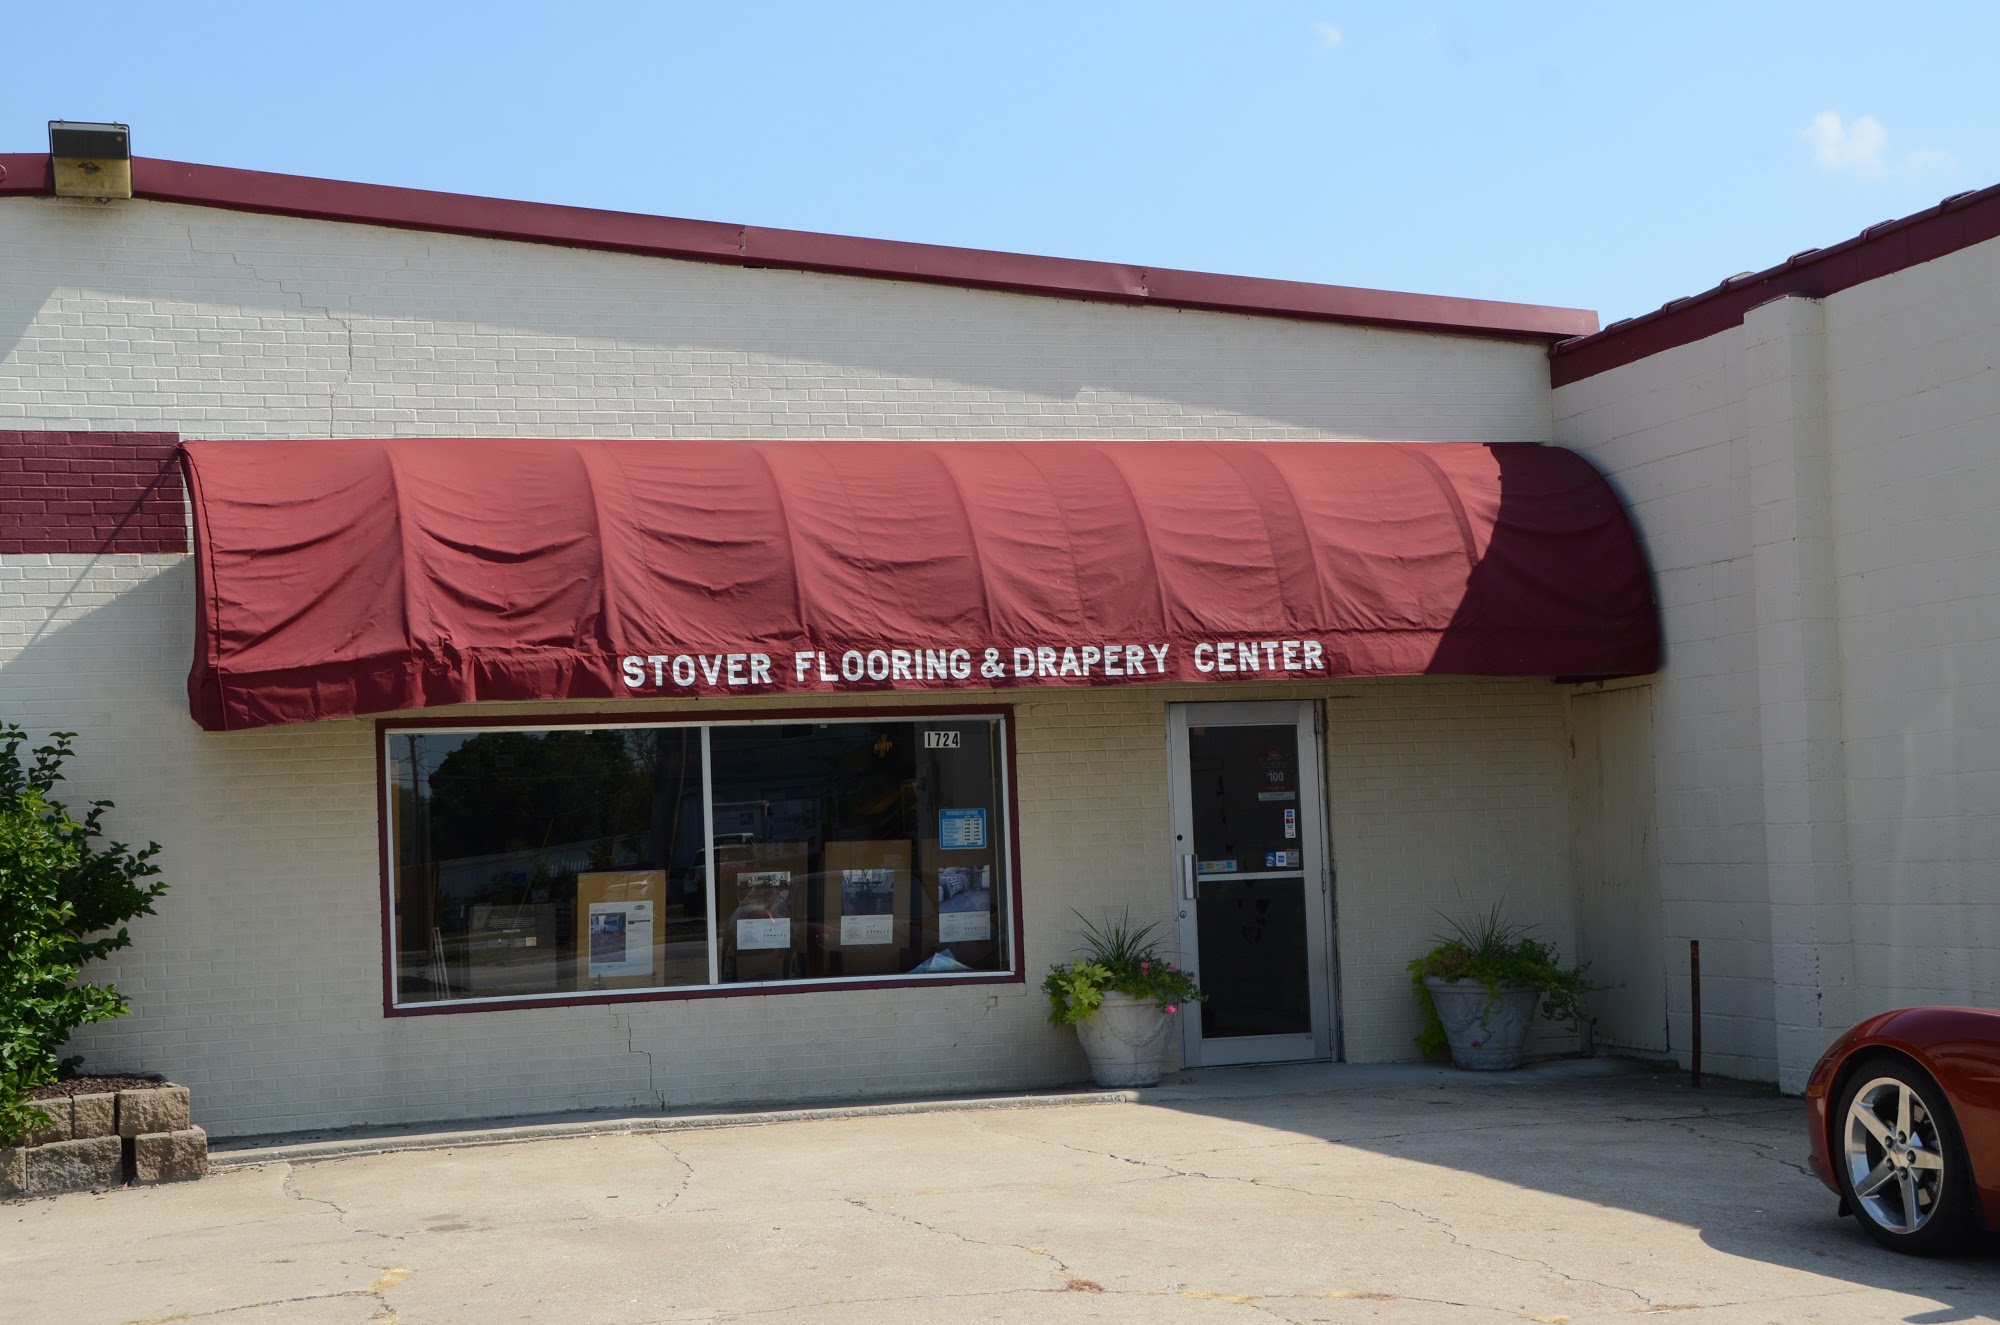 Stover's Flooring & Drapery Center